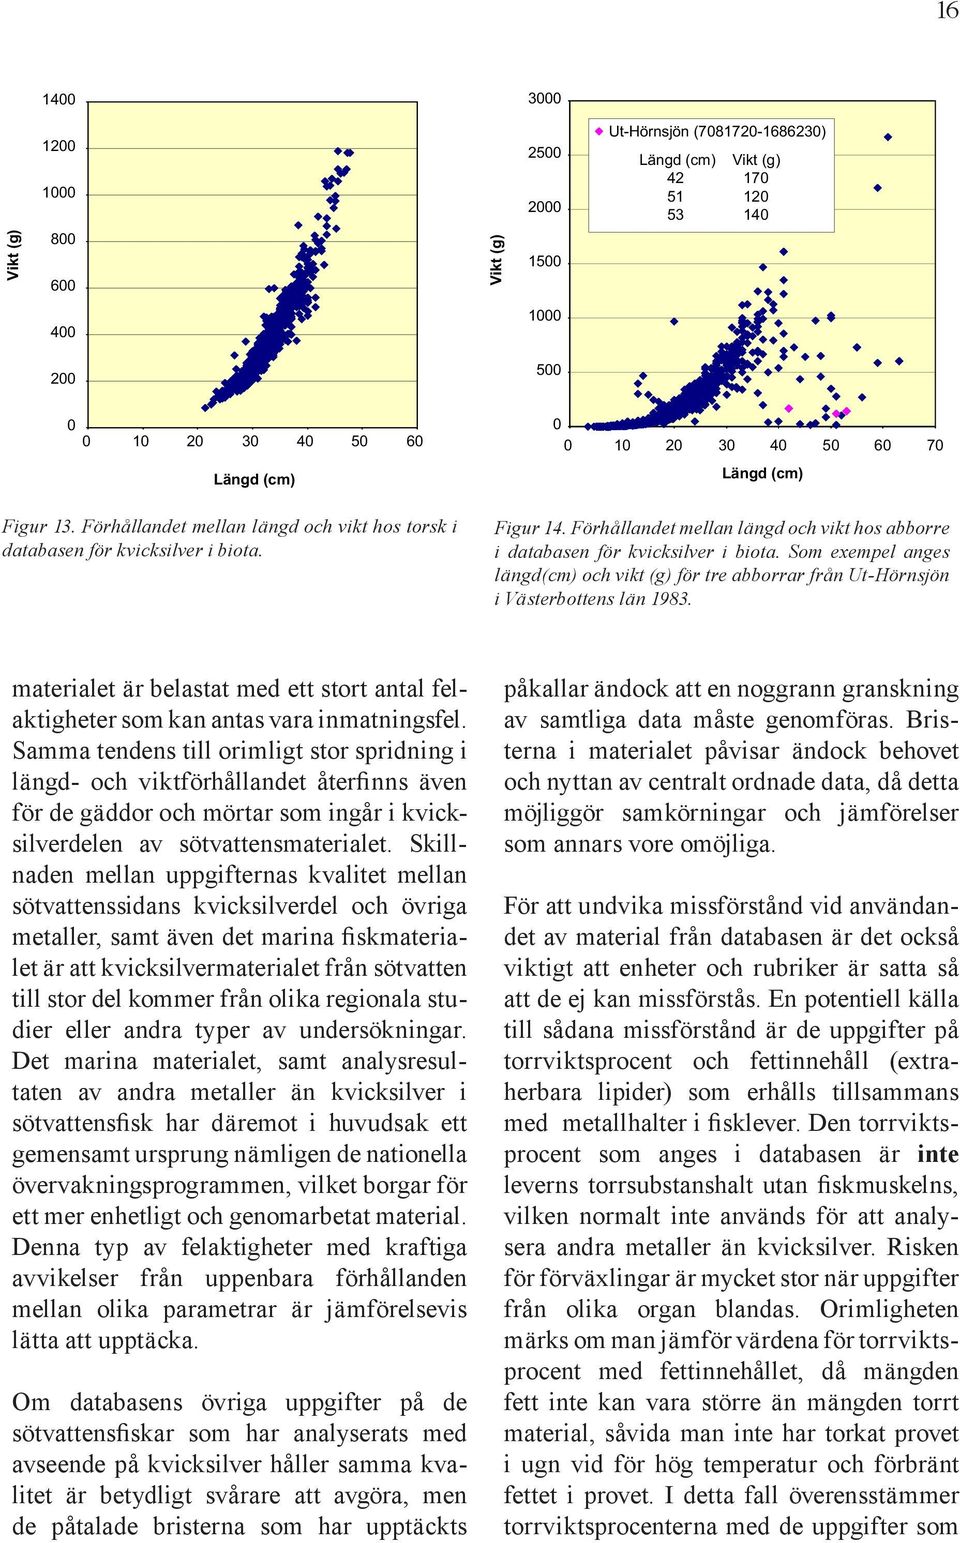 Förhållandet mellan längd och vikt hos abborre i databasen för kvicksilver i biota. Som exempel anges längd(cm) och vikt (g) för tre abborrar från Ut-Hörnsjön i Västerbottens län 1983.